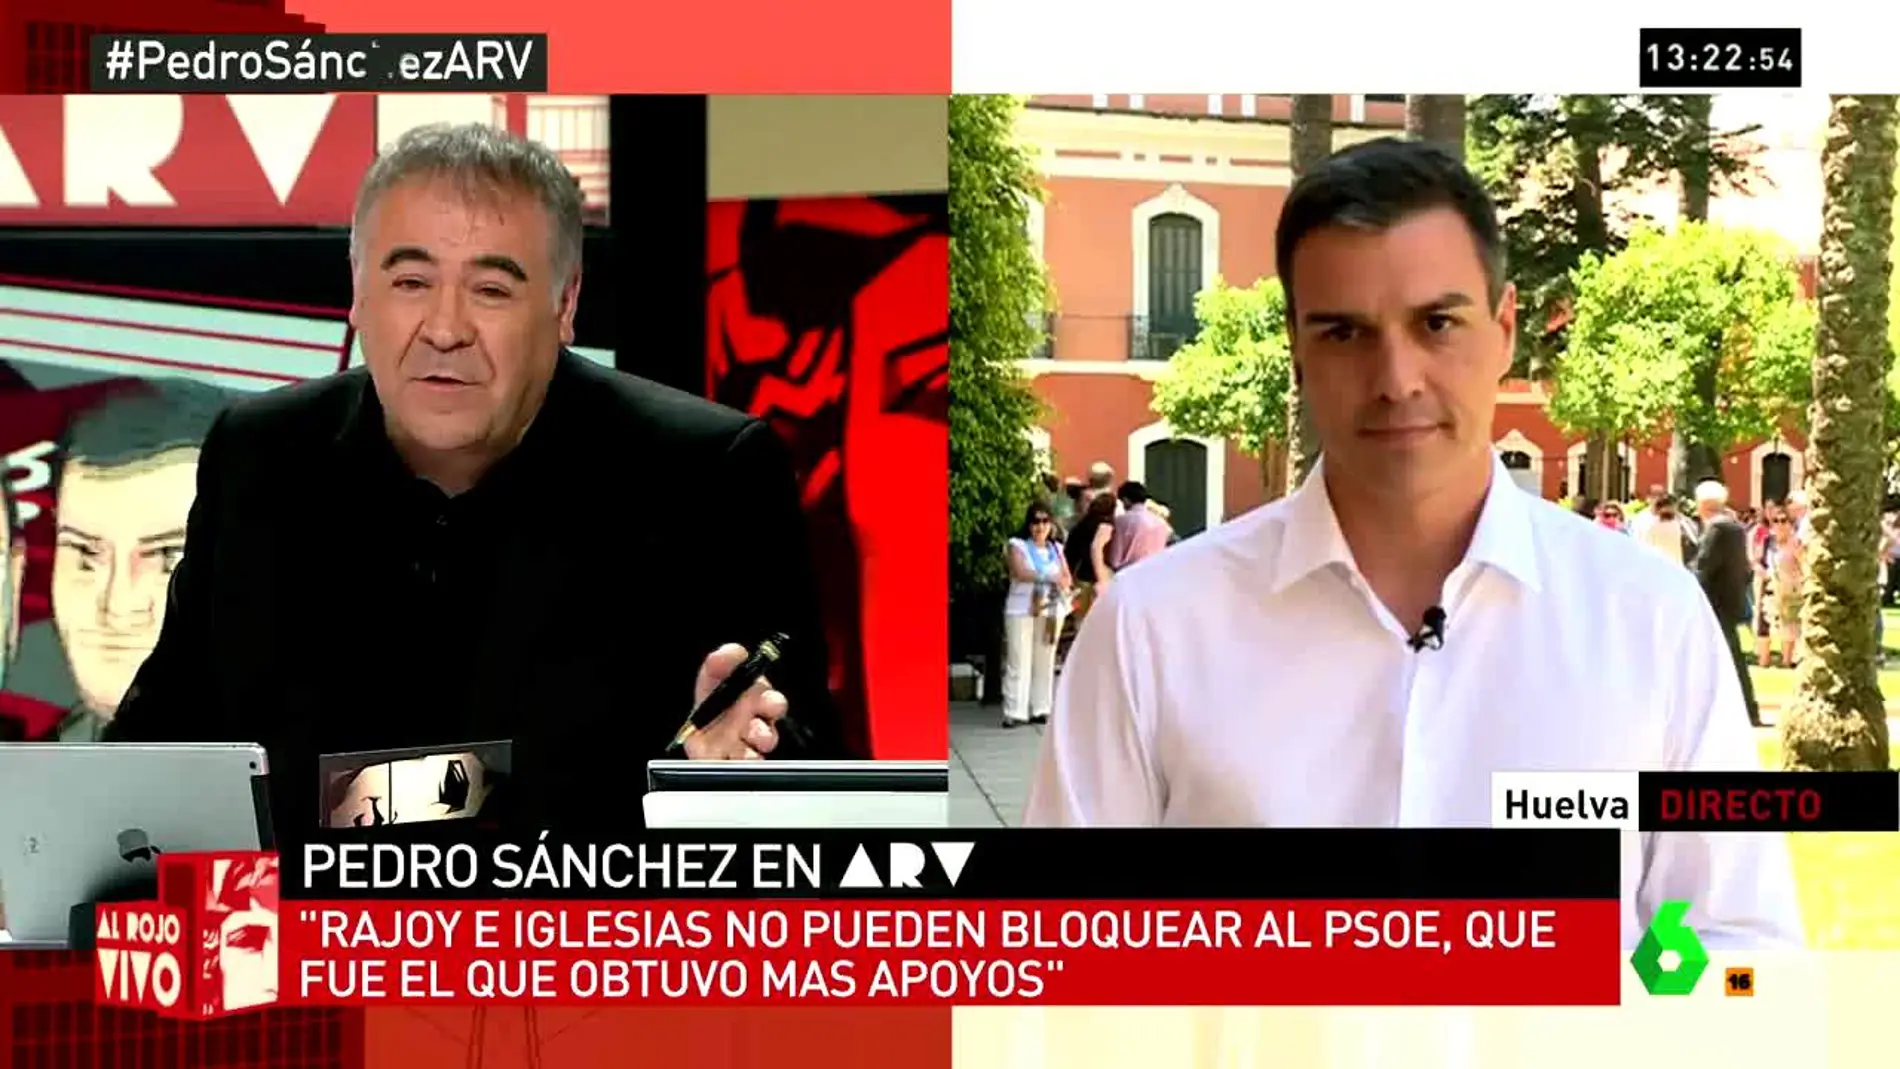 Pedro Sánchez en ARV